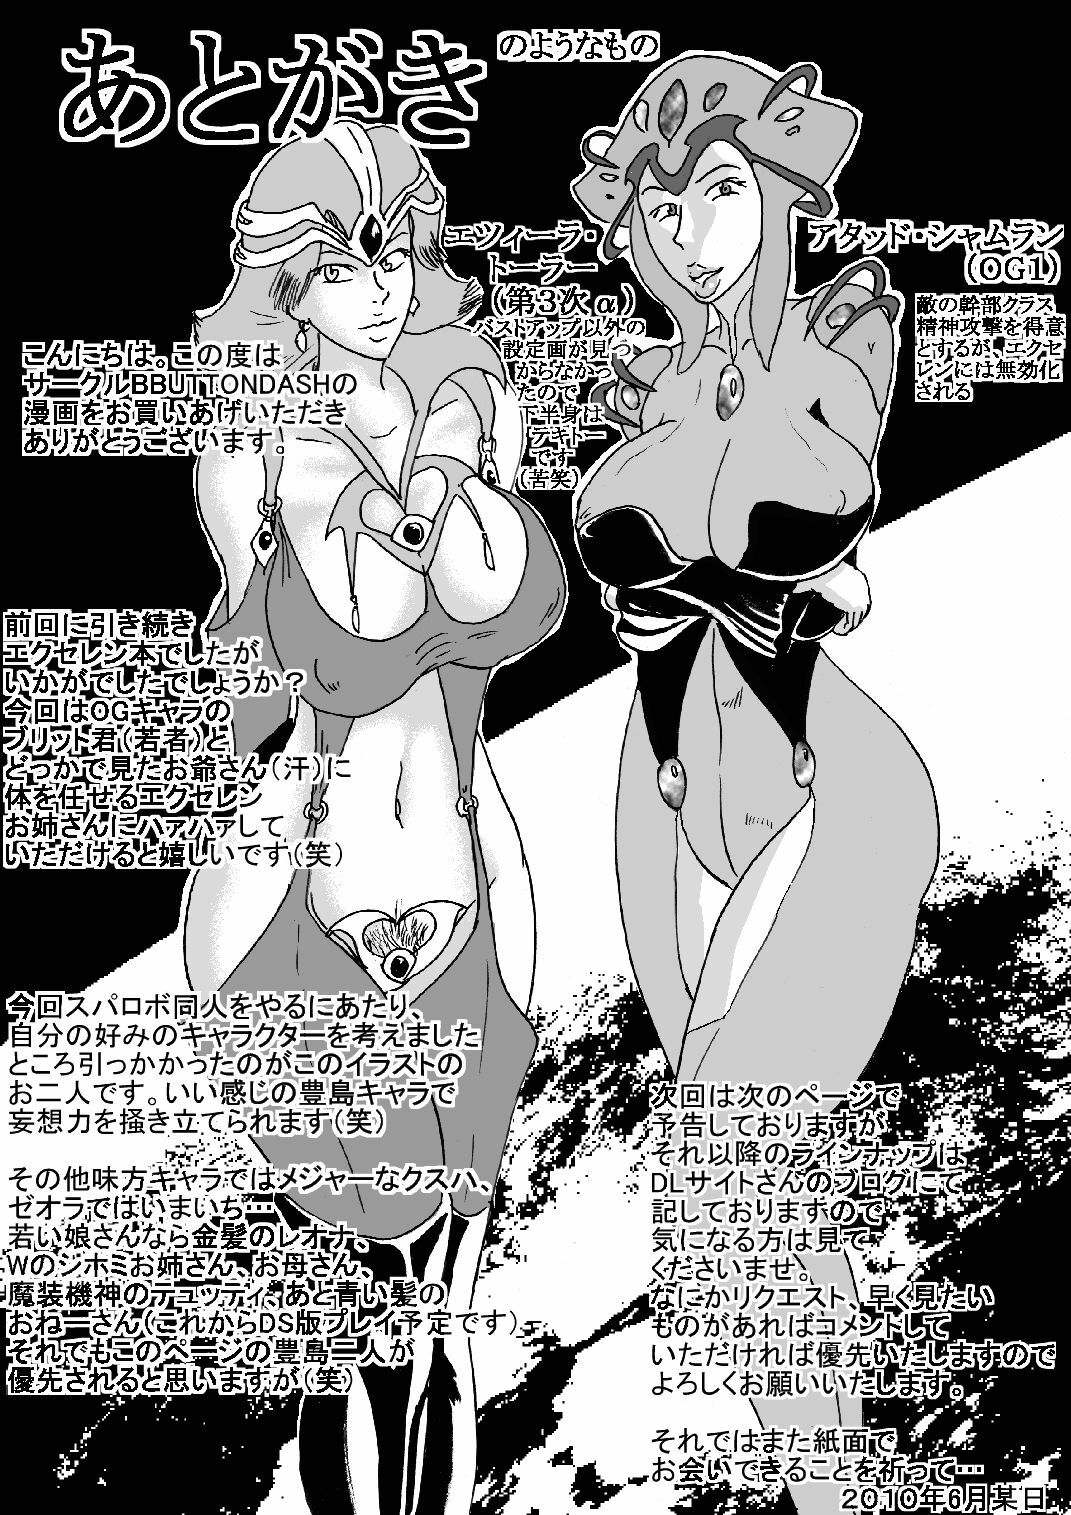 [BBUTTONDASH] Dainiji Super H Taisen e (Super Robot Wars OG) [Digital] page 40 full